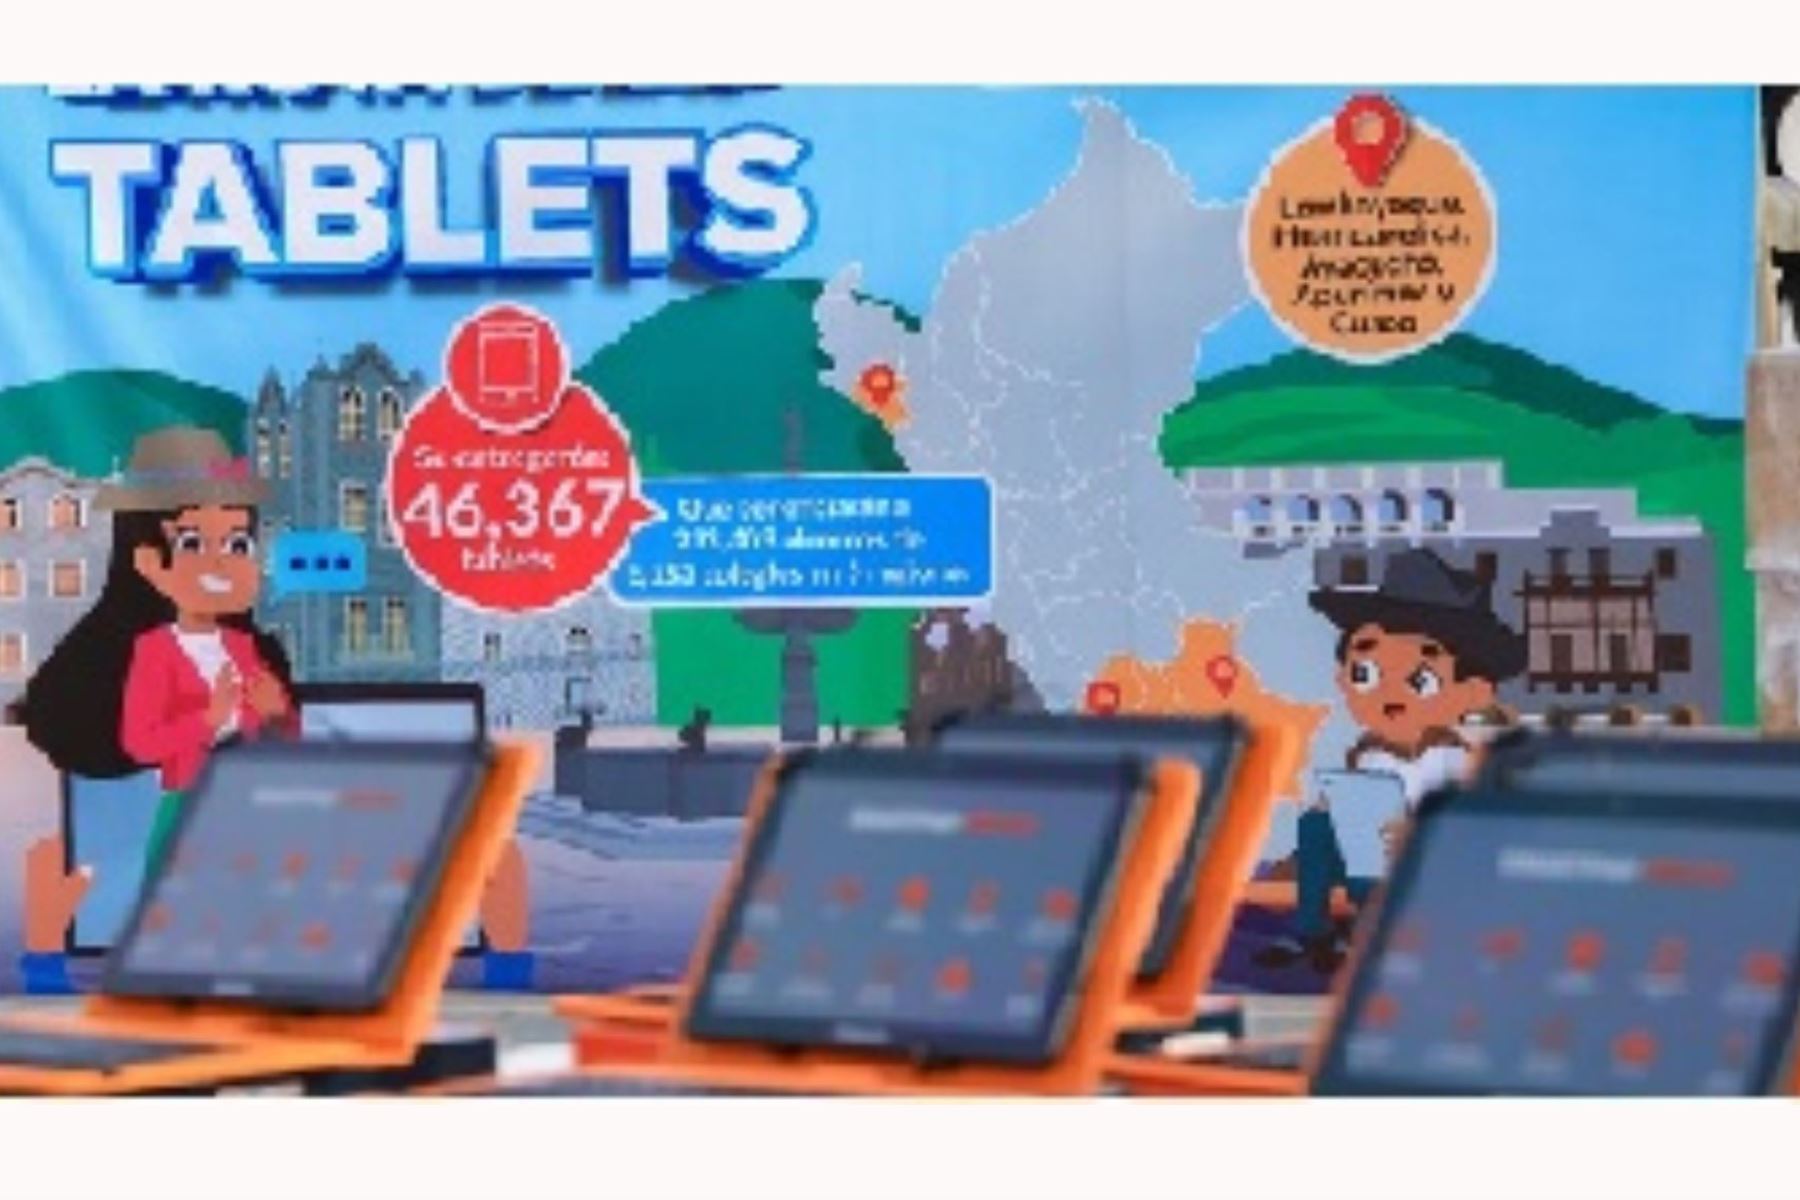 MTC entrega más de 46 mil tablets a cinco regiones del país